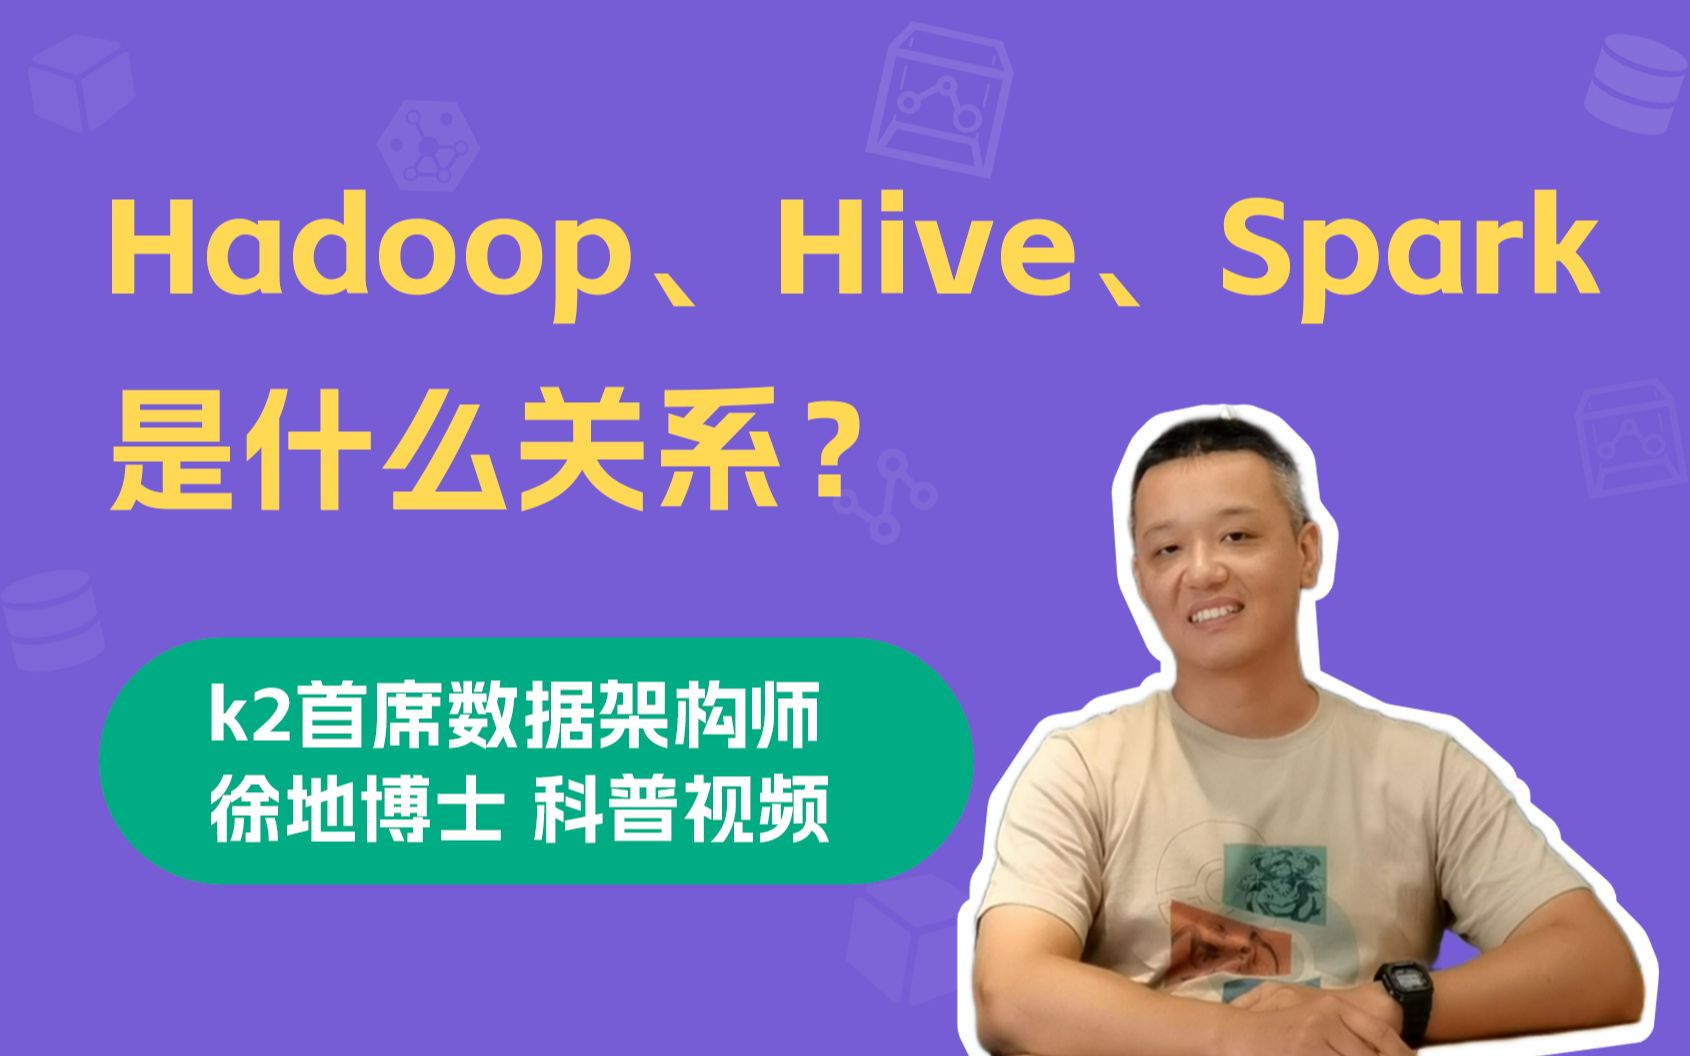 大数据技术生态中，Hadoop、Hive、Spark是什么关系？| 通俗易懂科普向